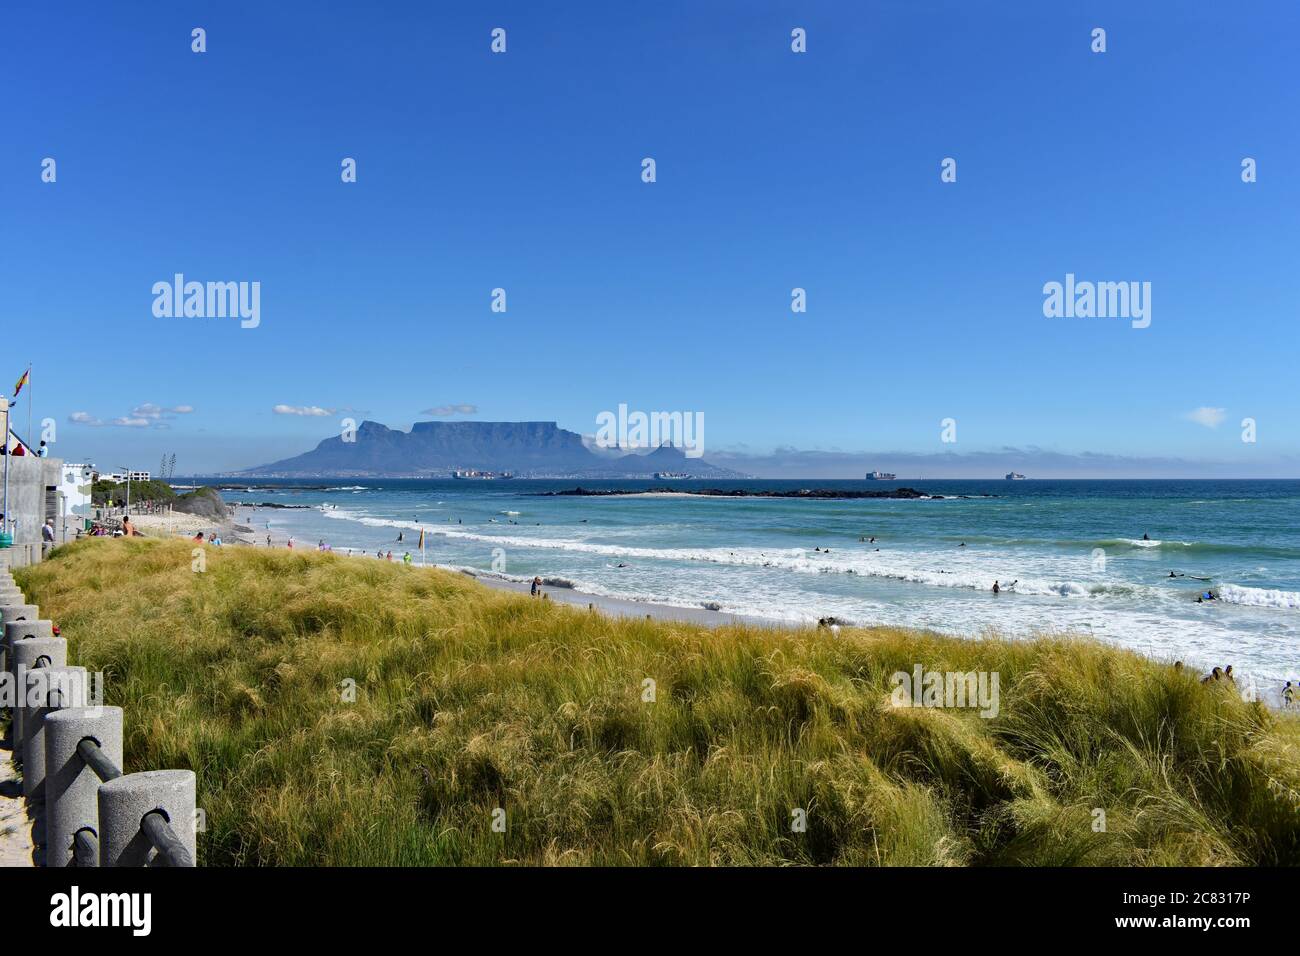 Table Mountain, Devils Peak et Lions Head vus depuis la plage de Bloubergstrand de l'autre côté de la baie de Table. L'herbe verte contraste avec le bleu du ciel et de l'océan Banque D'Images